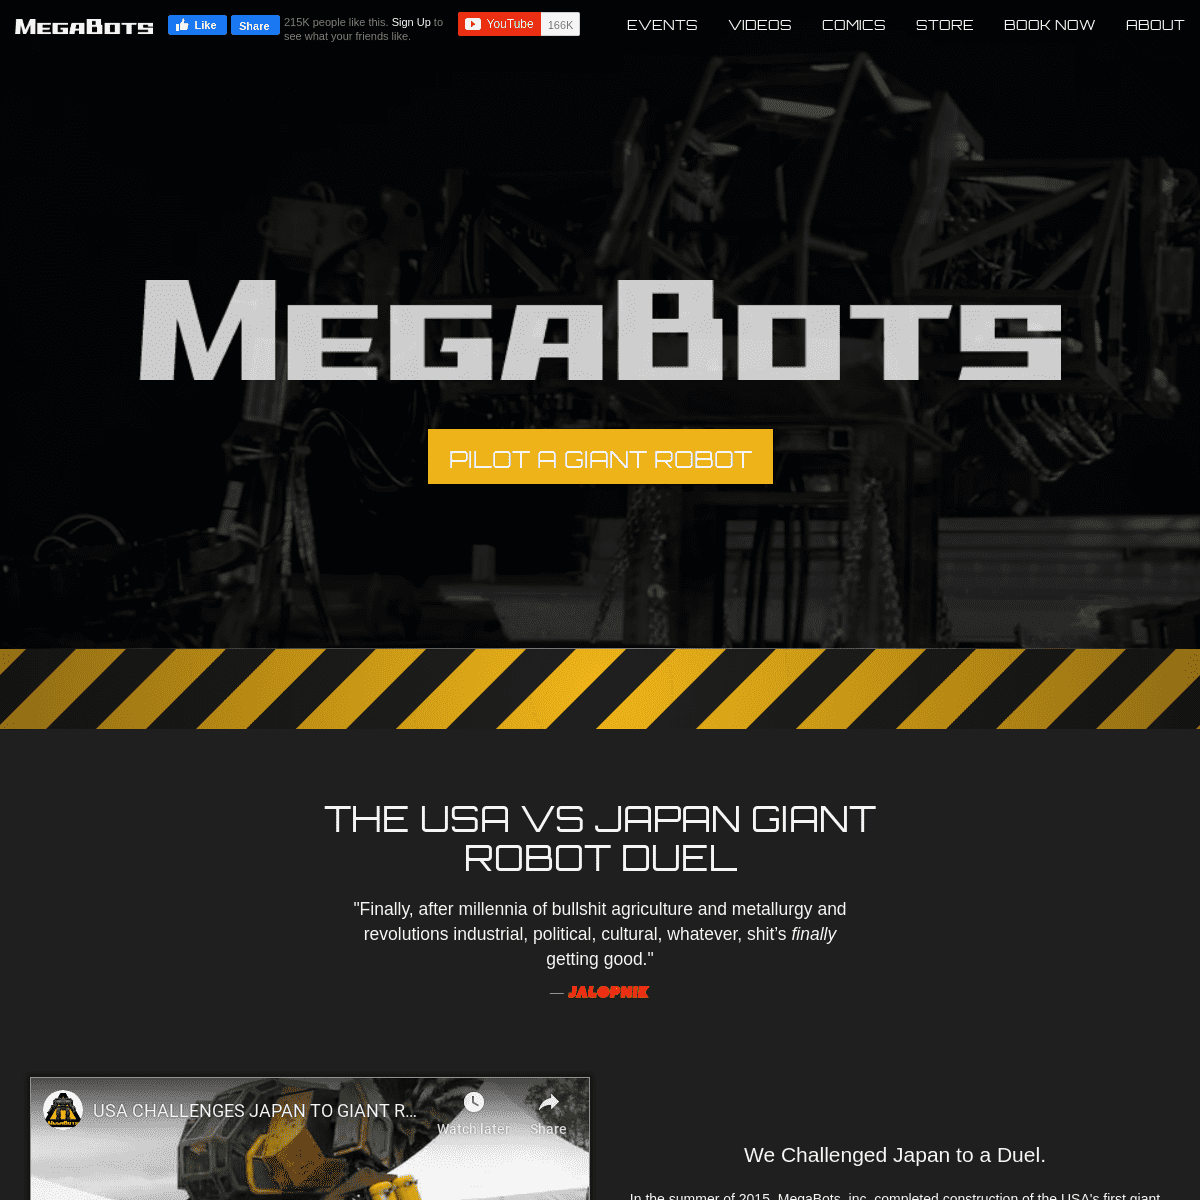 A complete backup of megabots.com